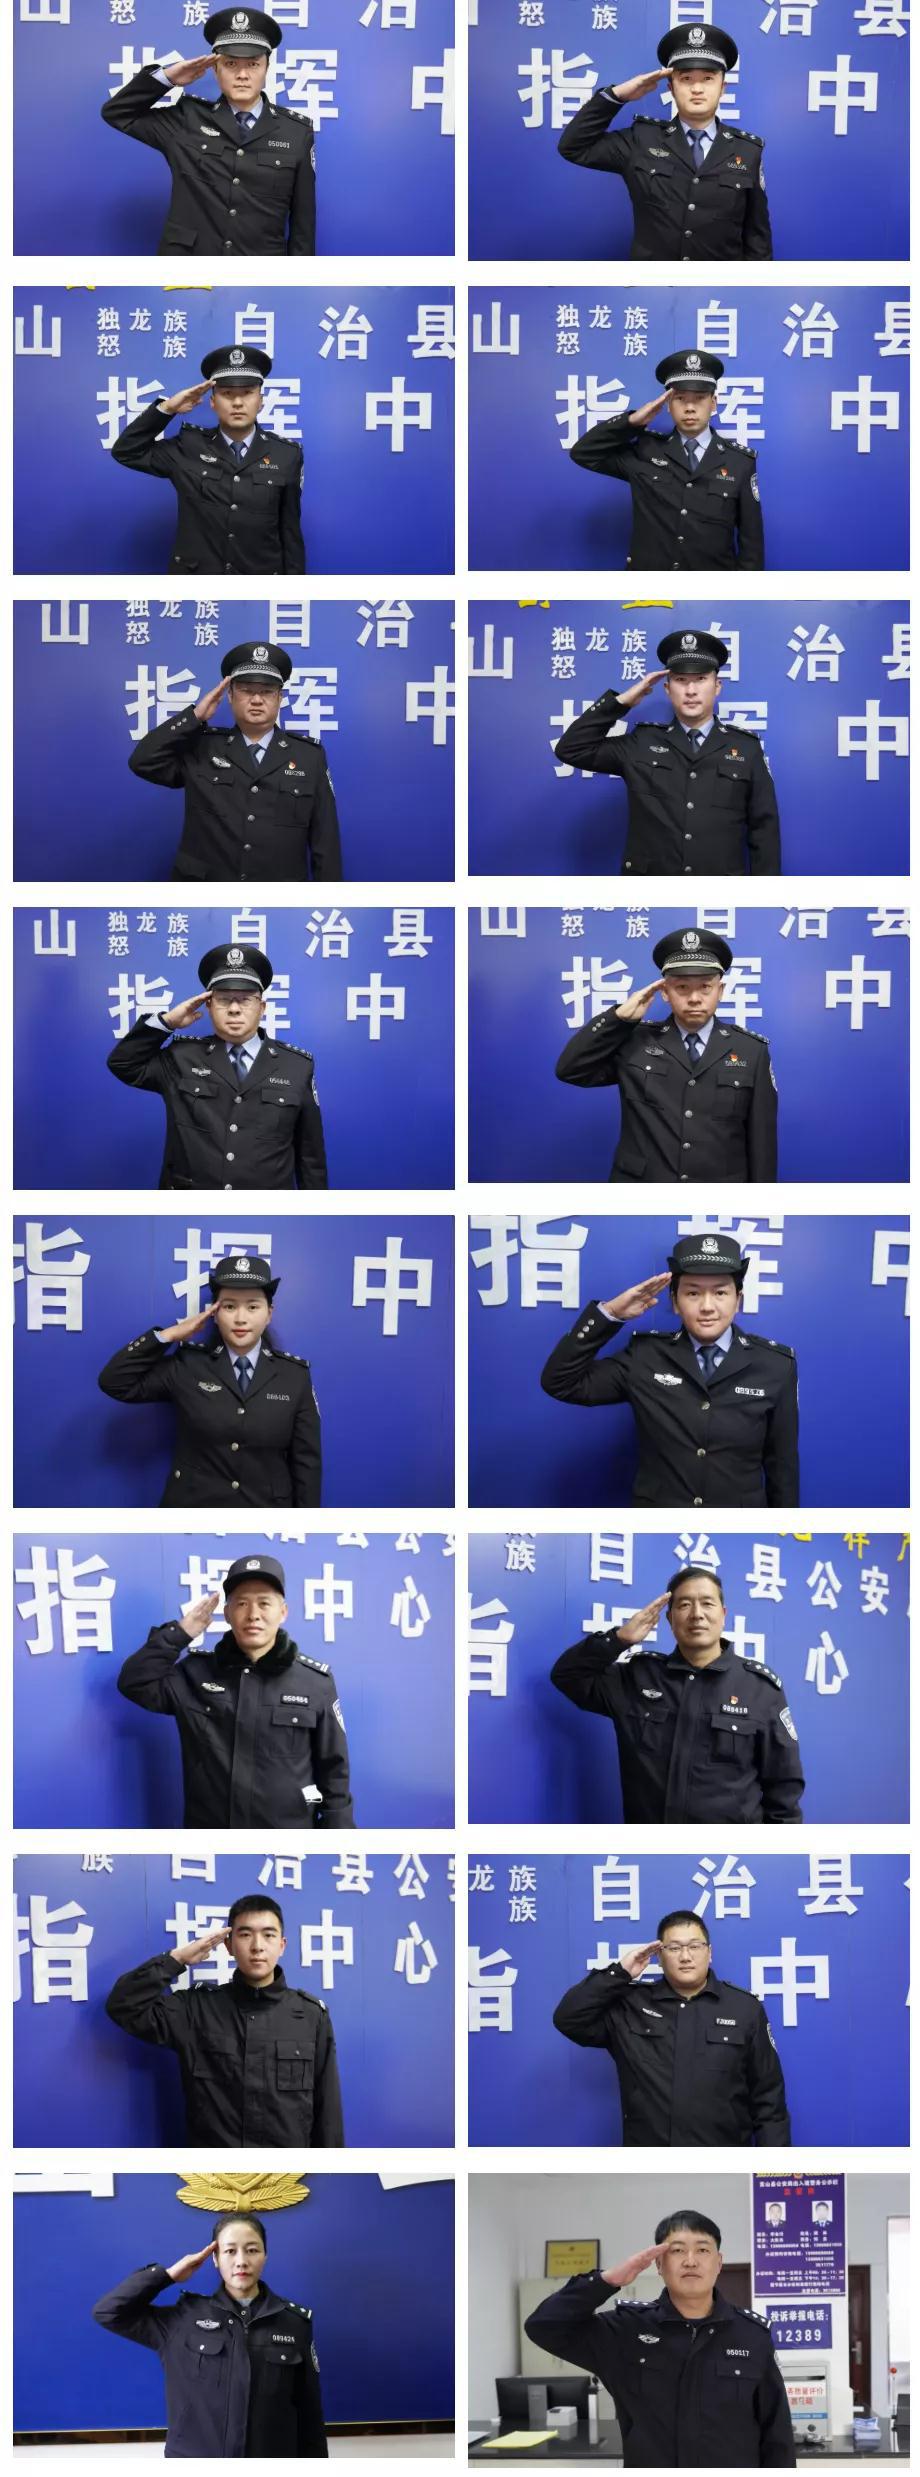 警察敬礼手势图片图片